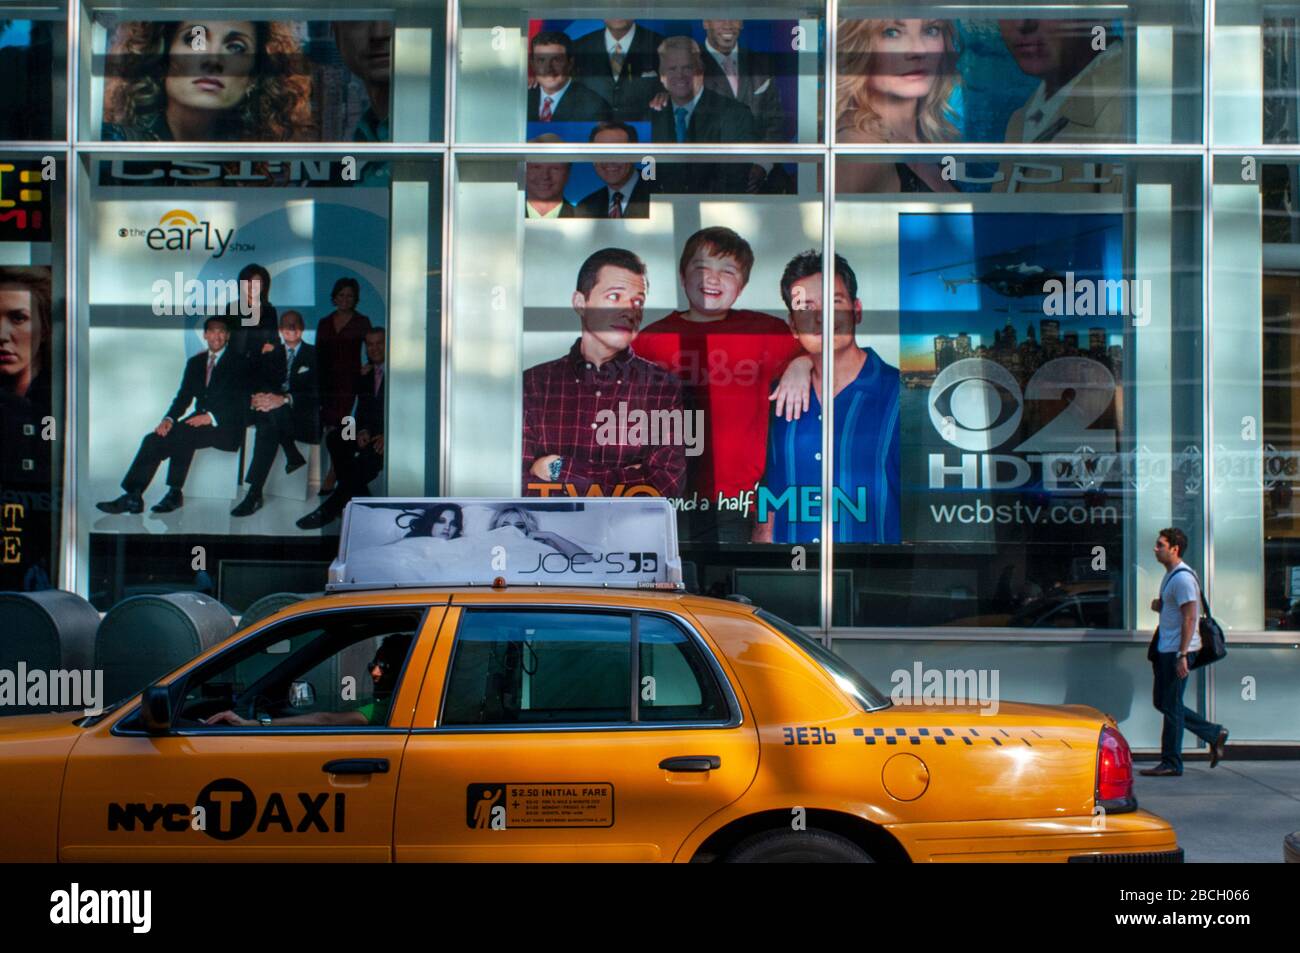 Taxi in 5th avenue e CBS Outdoor America, mostra la pubblicità per i programmi televisivi CBS, New York, USA Foto Stock